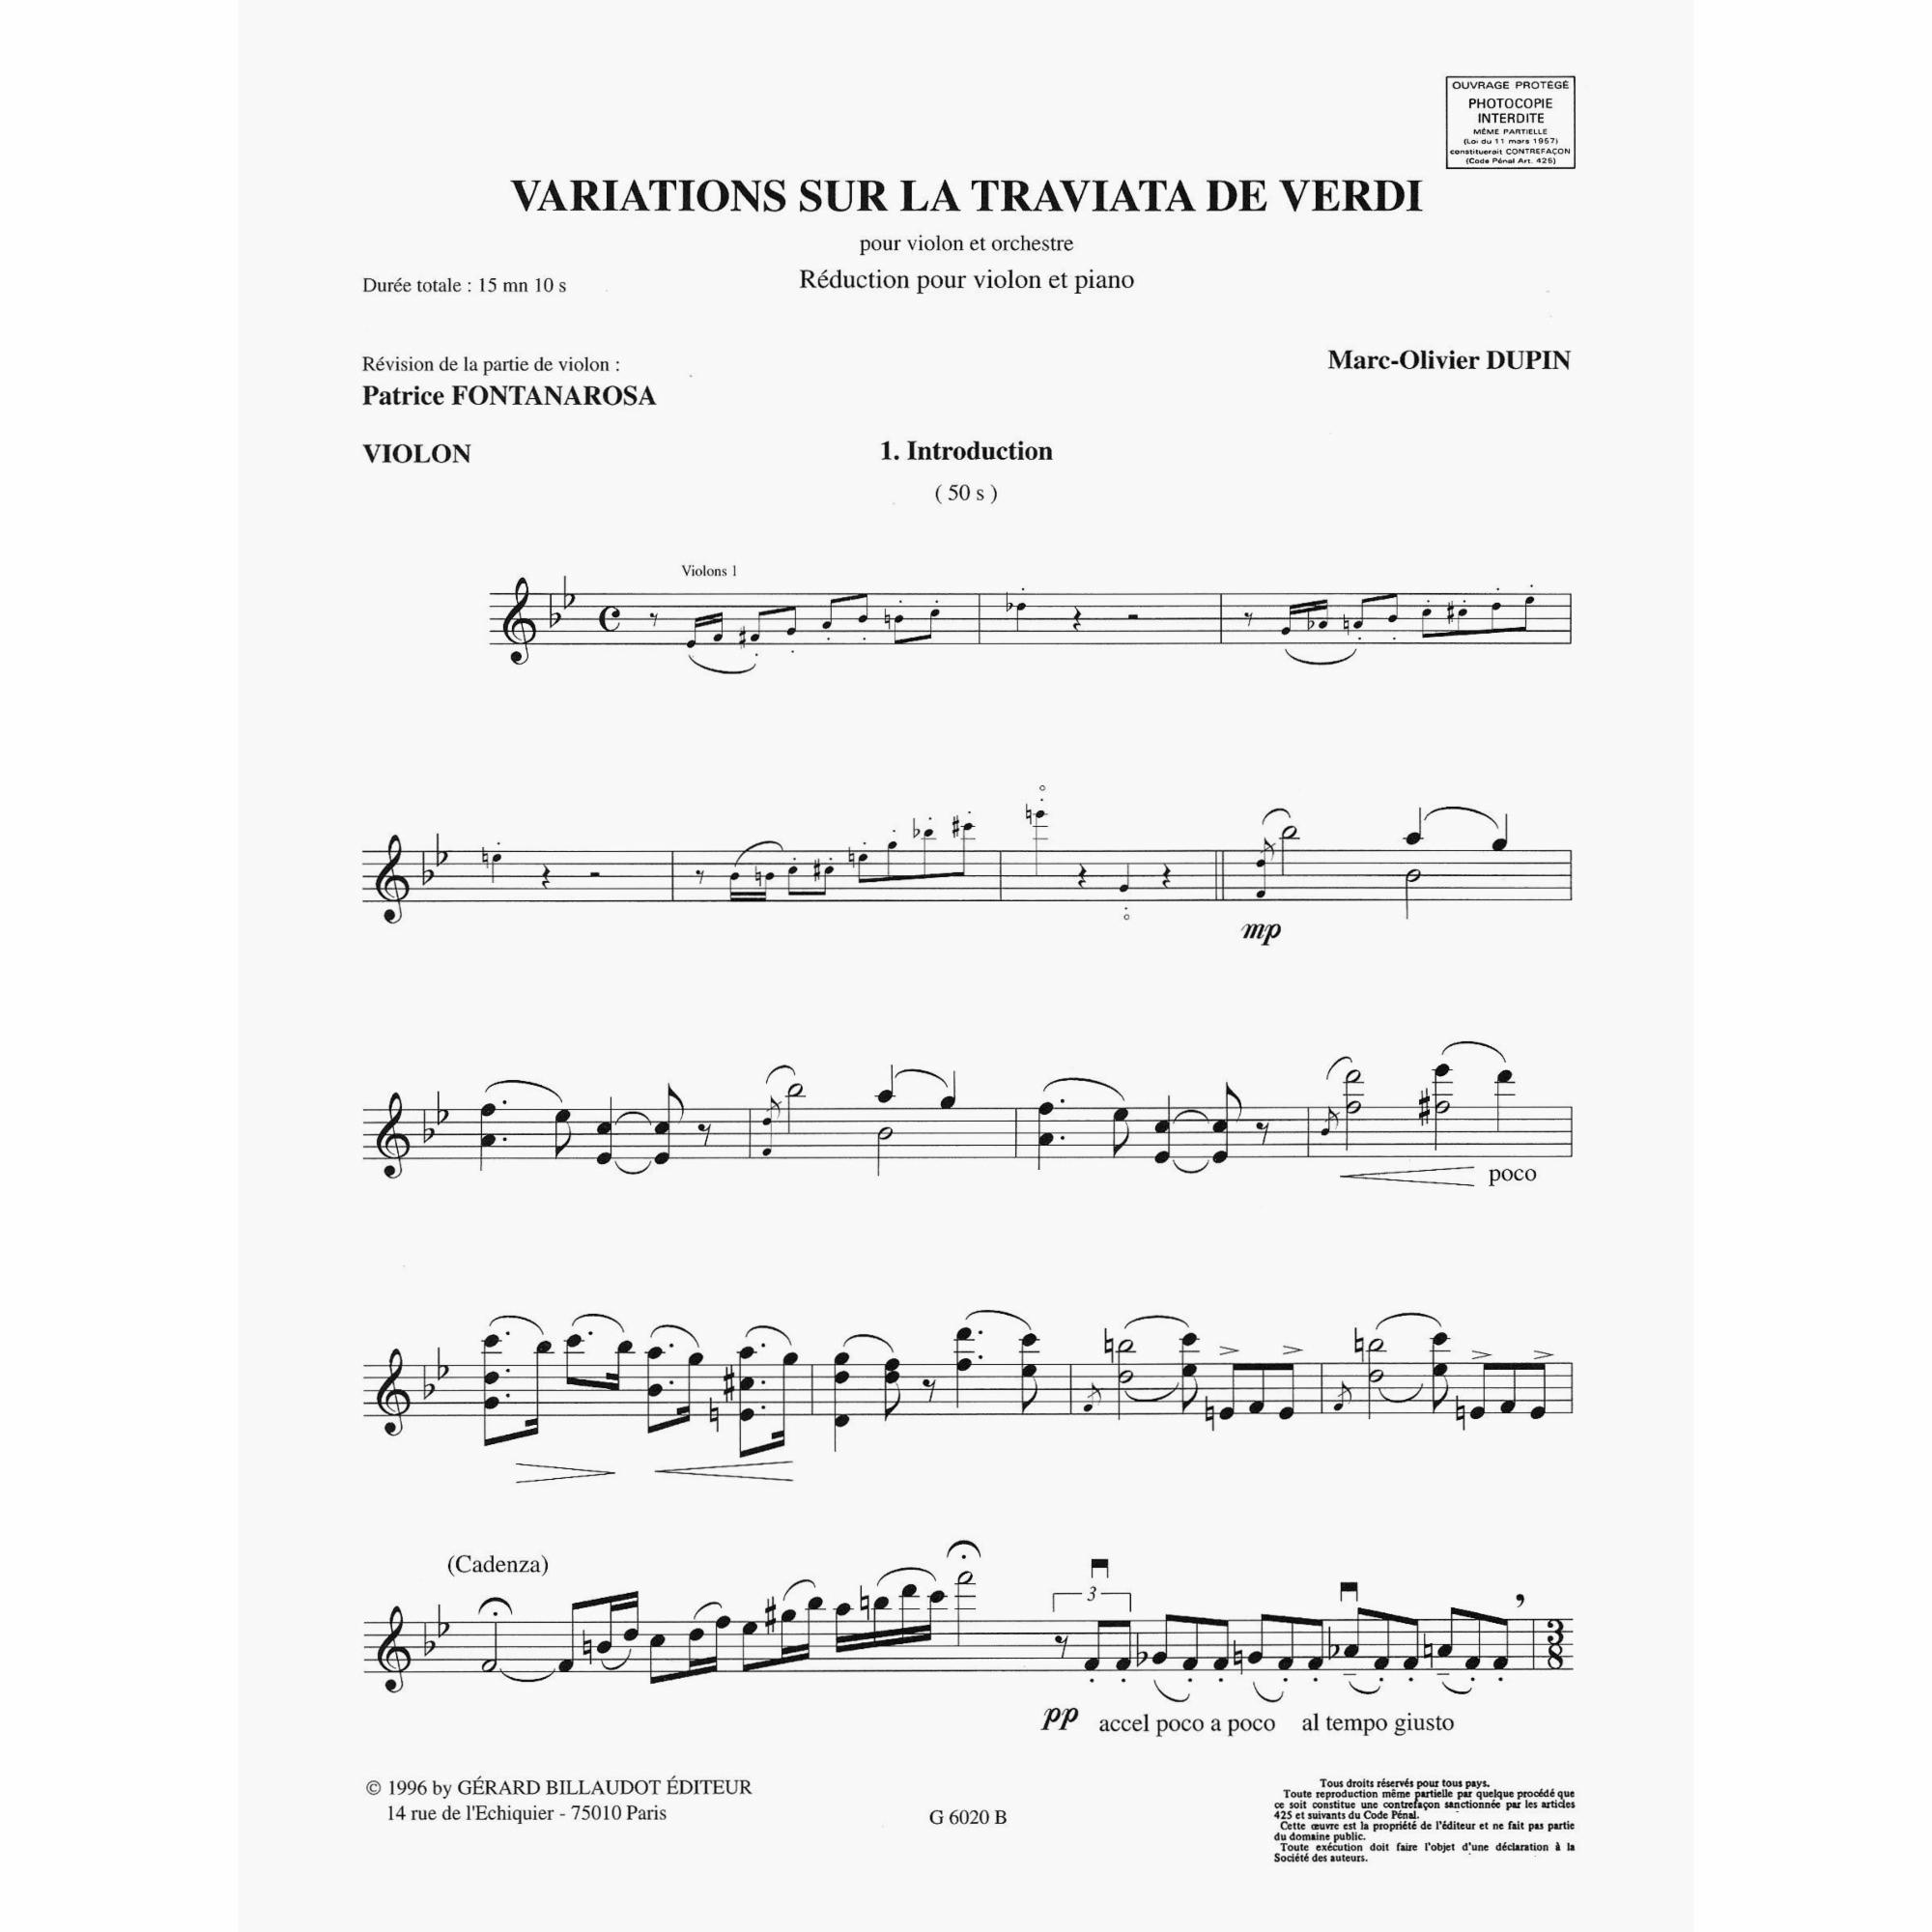 Sample: Violin (Pg. 1)